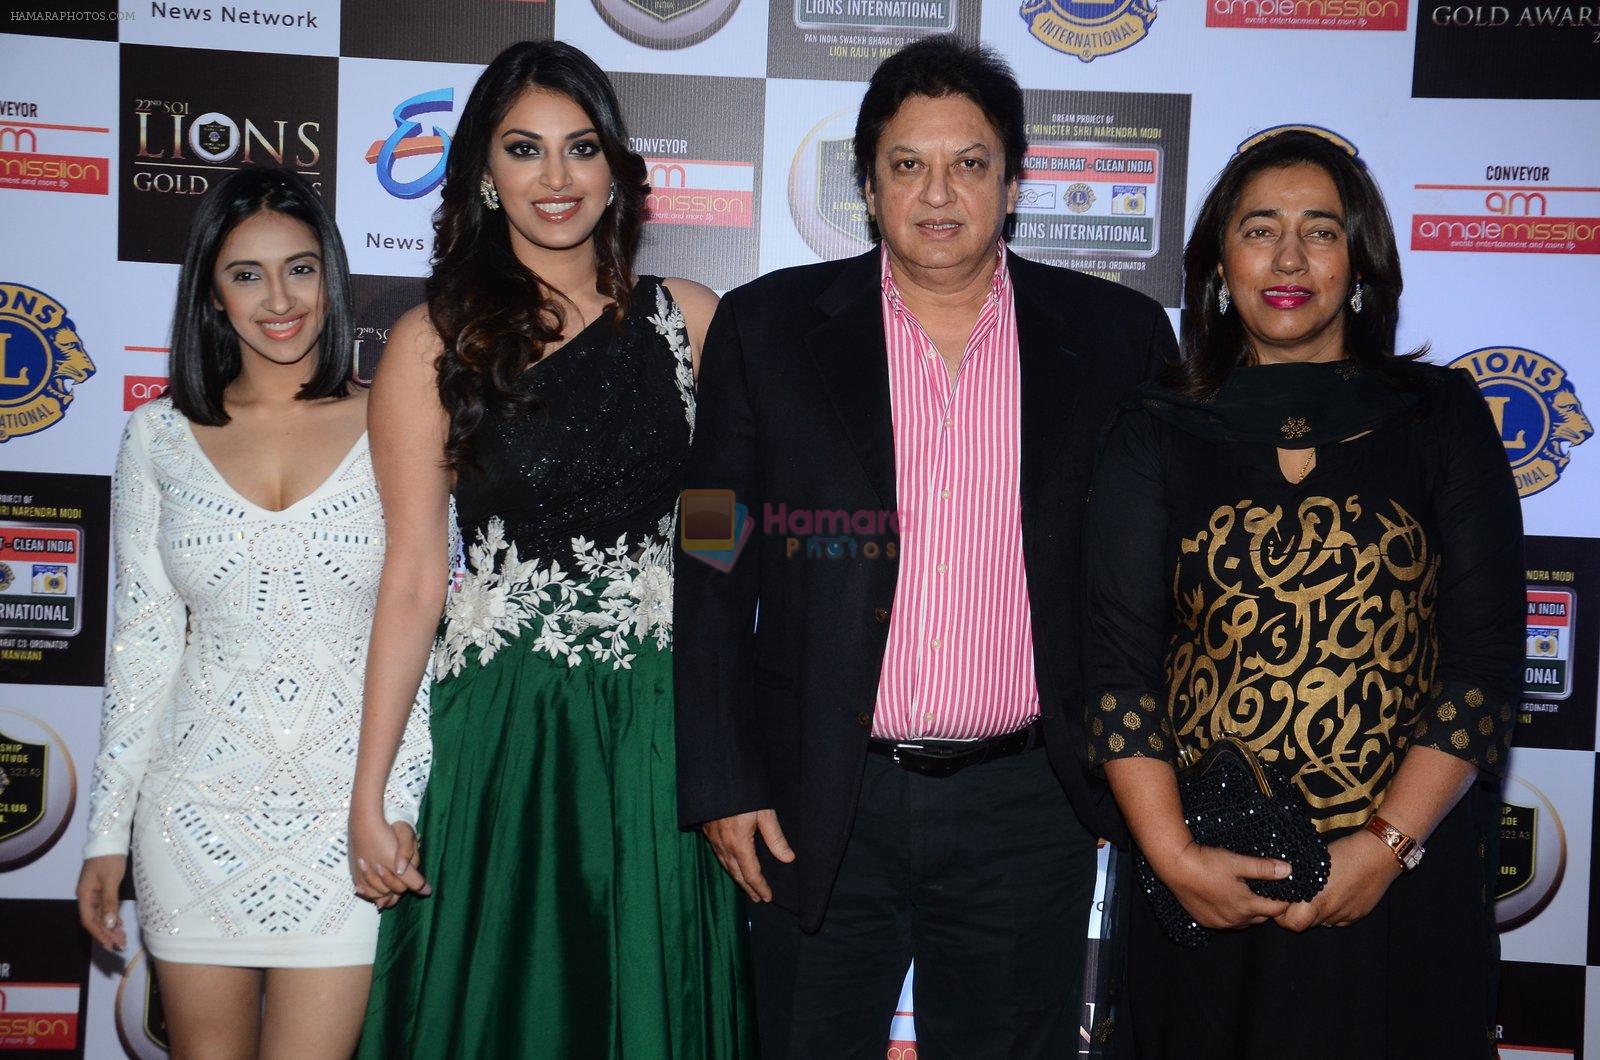 Anushka Ranjan at Lions Awards 2016 on 22nd Jan 2016